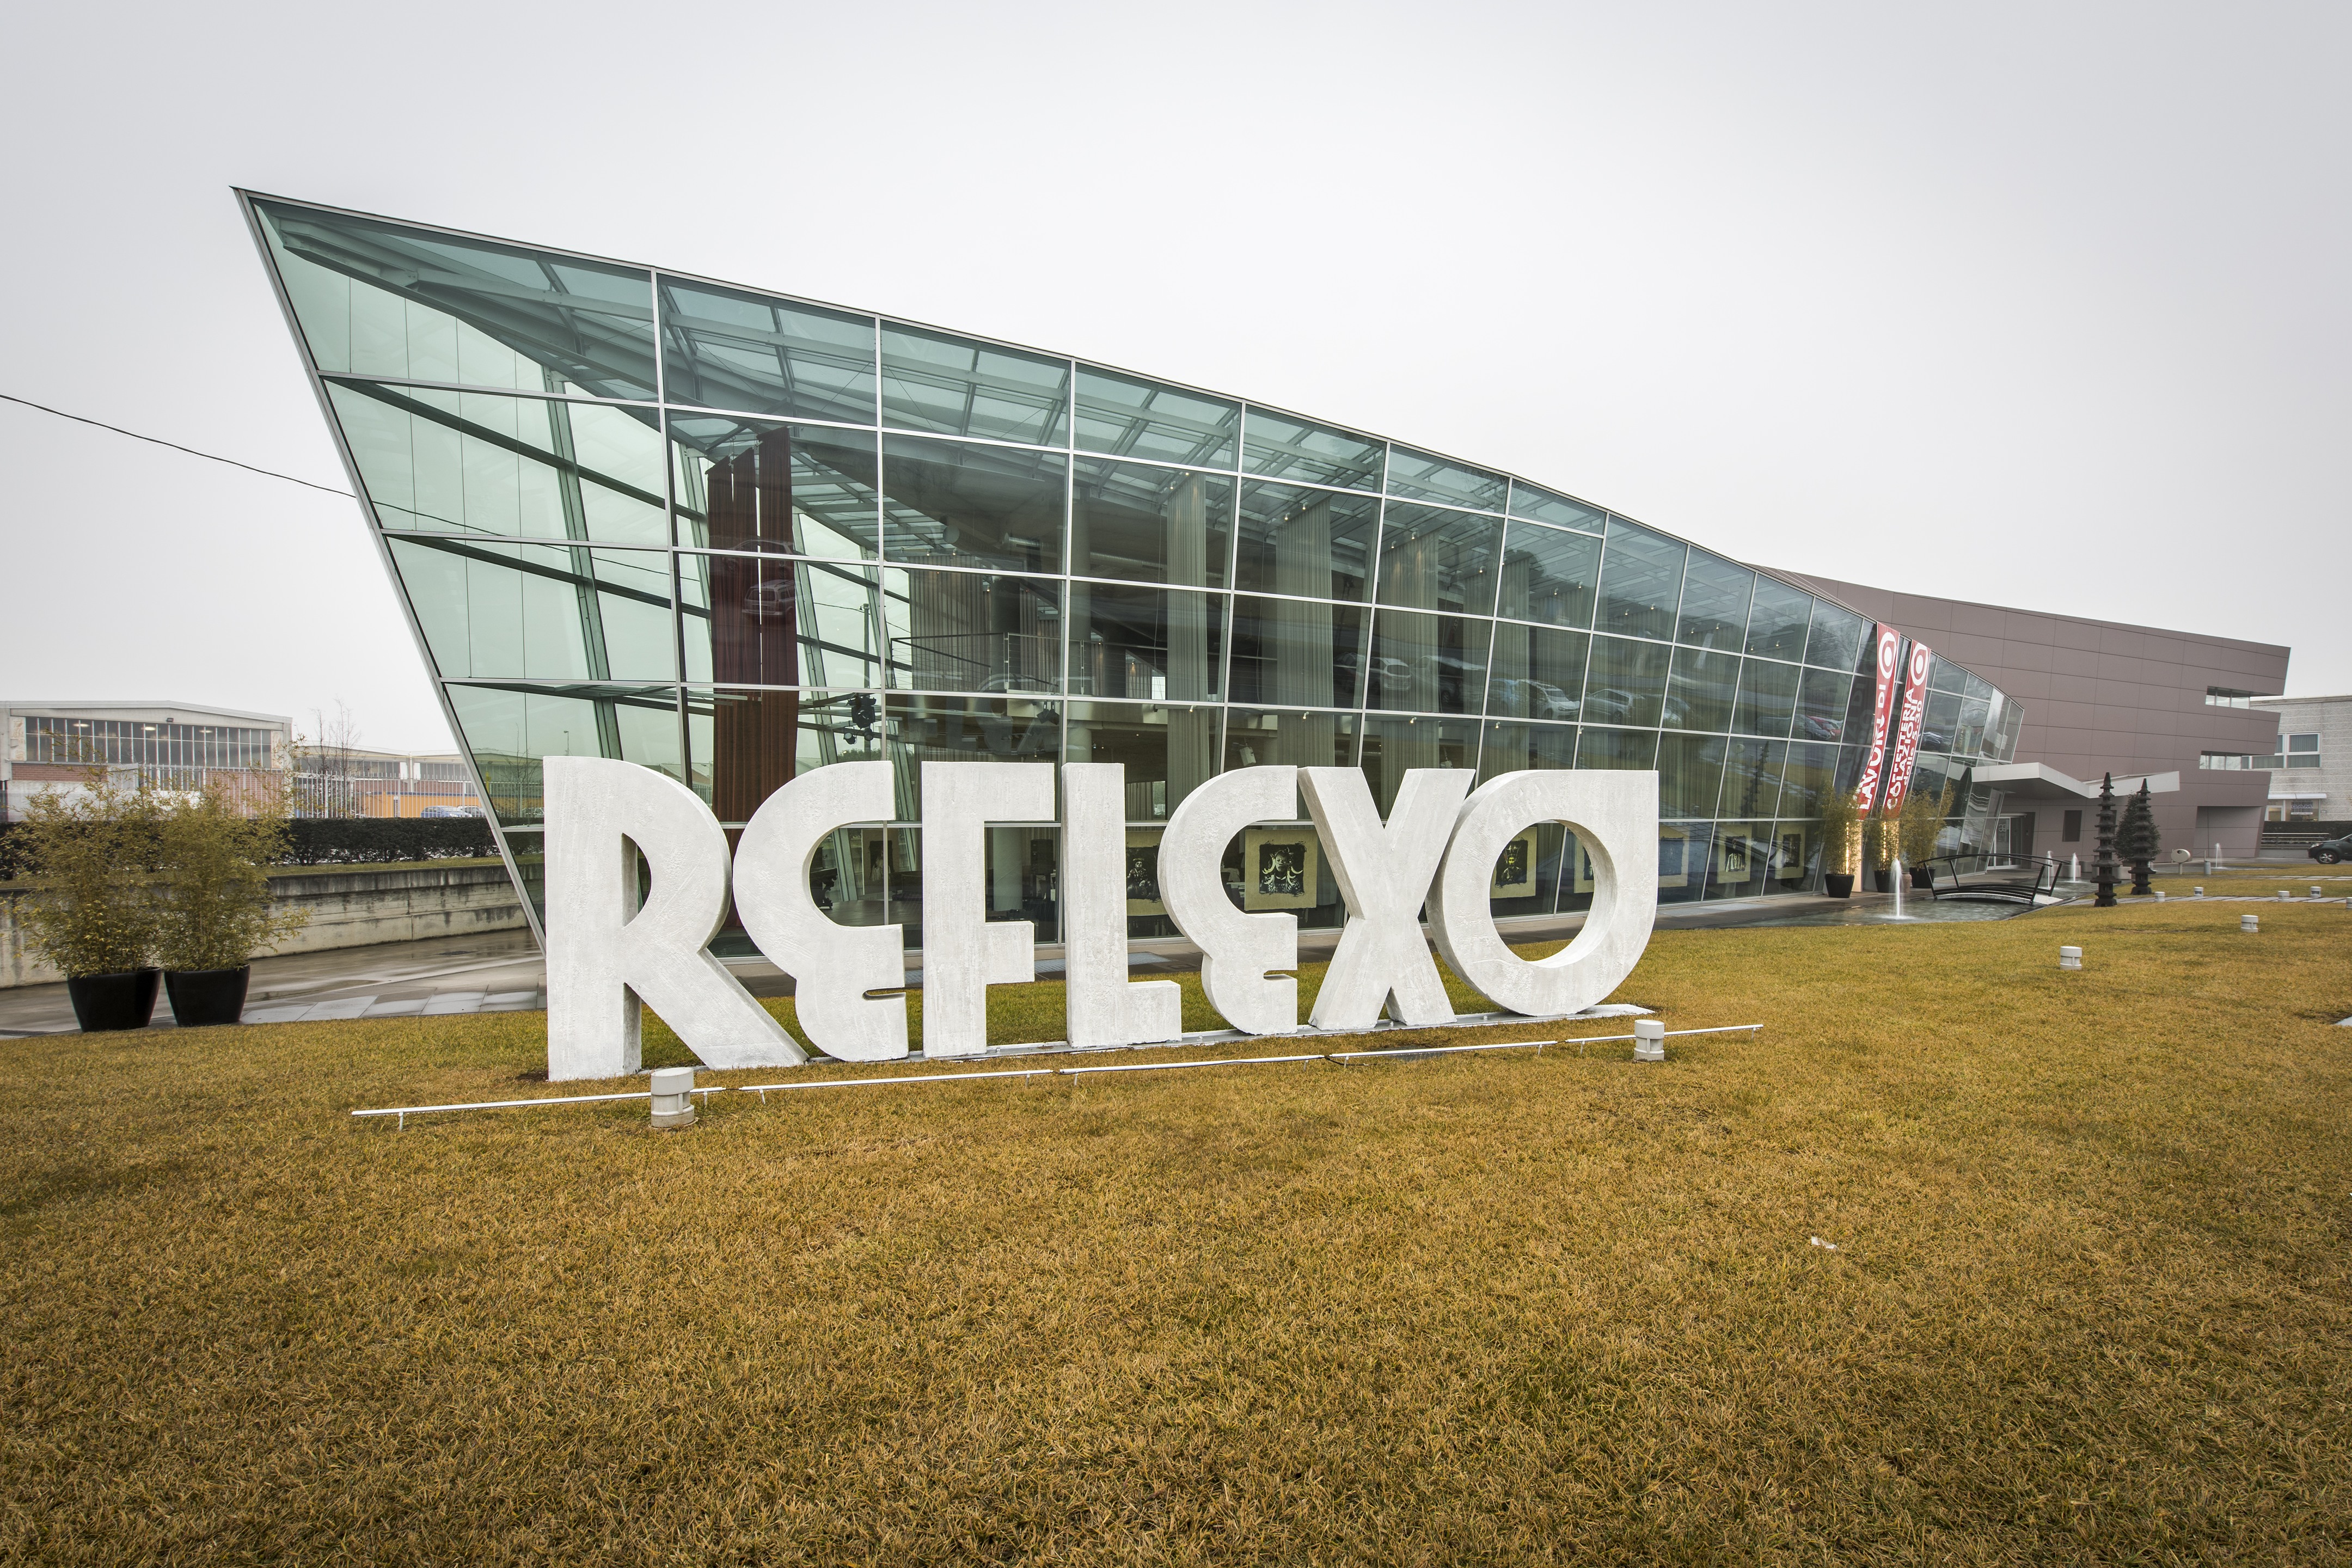 Reflexo-1